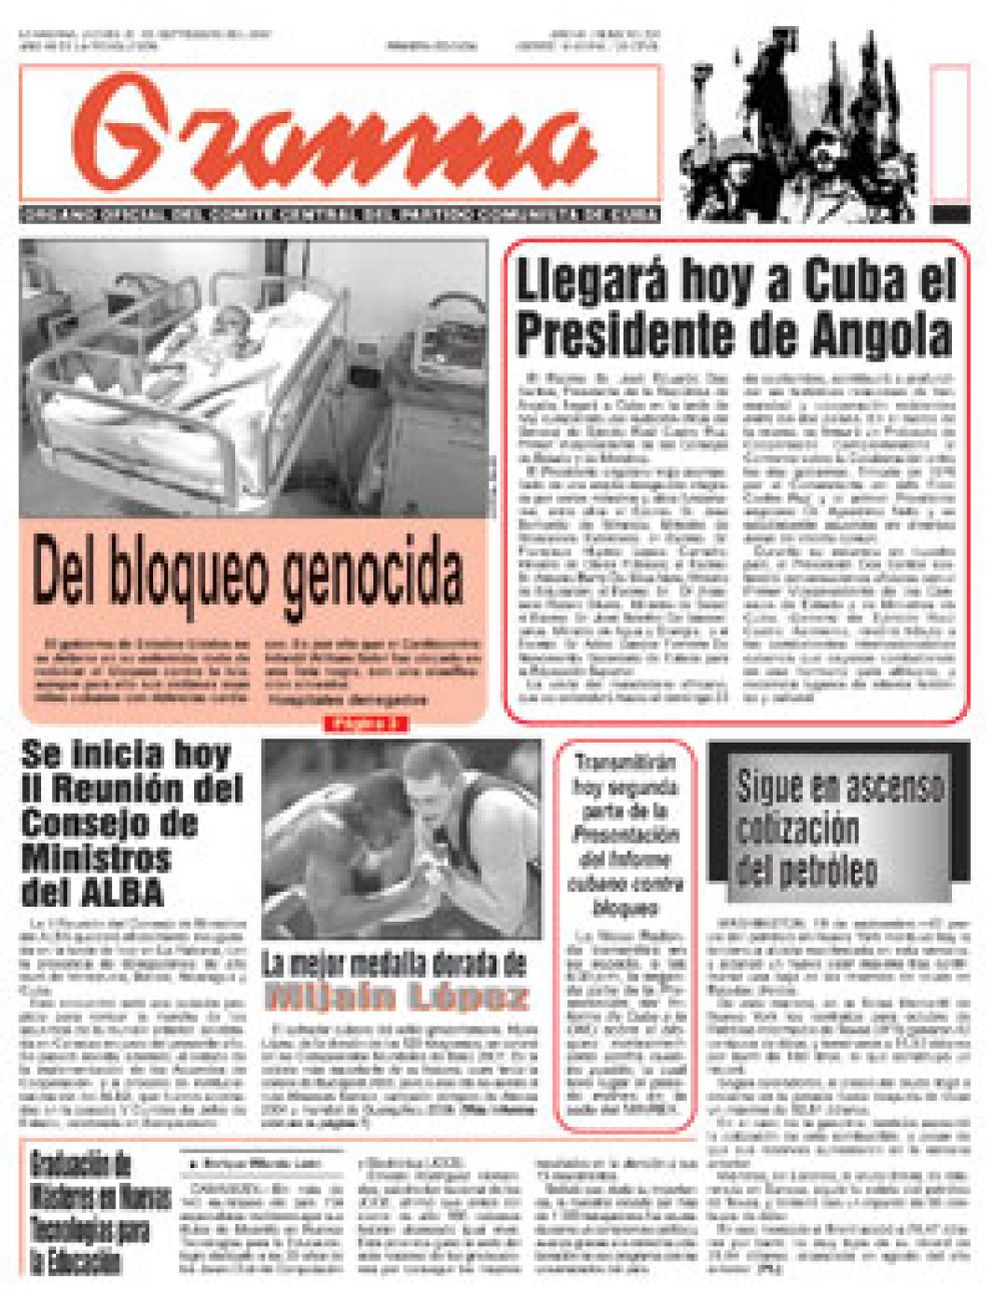 Foto: Una publicación comunista italiana regalará el diario cubano 'Granma'